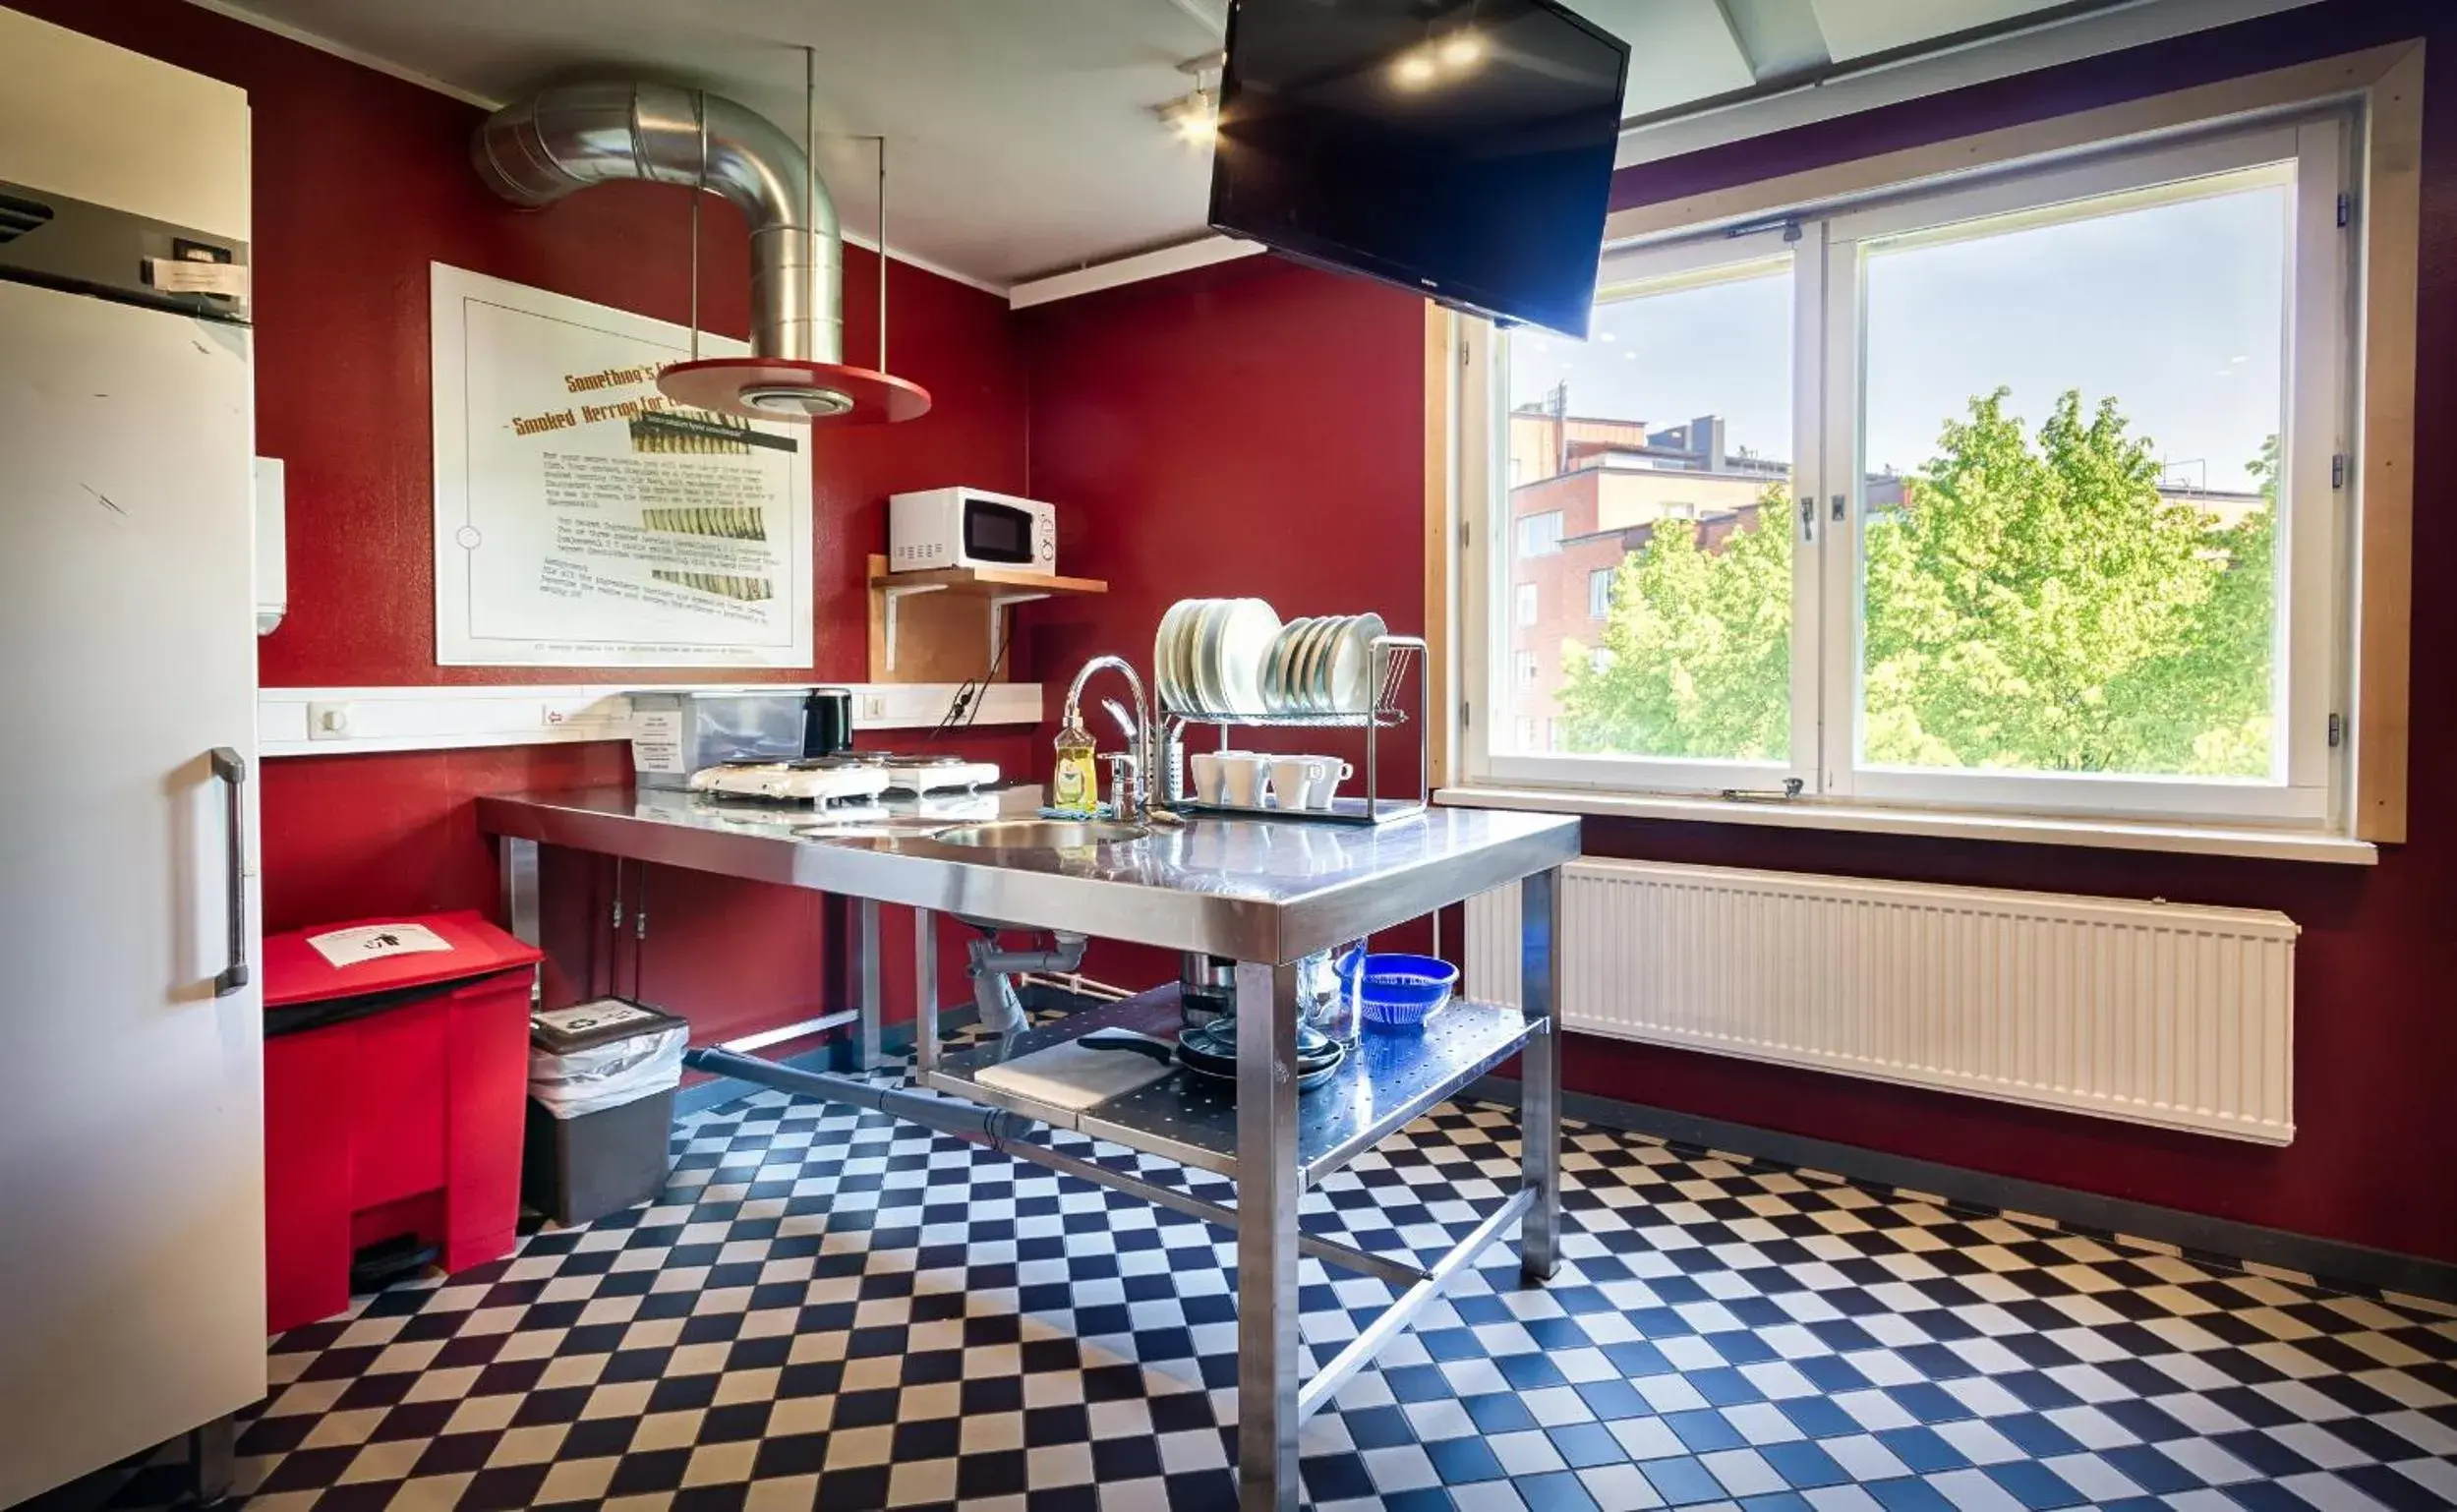 Communal kitchen in Eurohostel